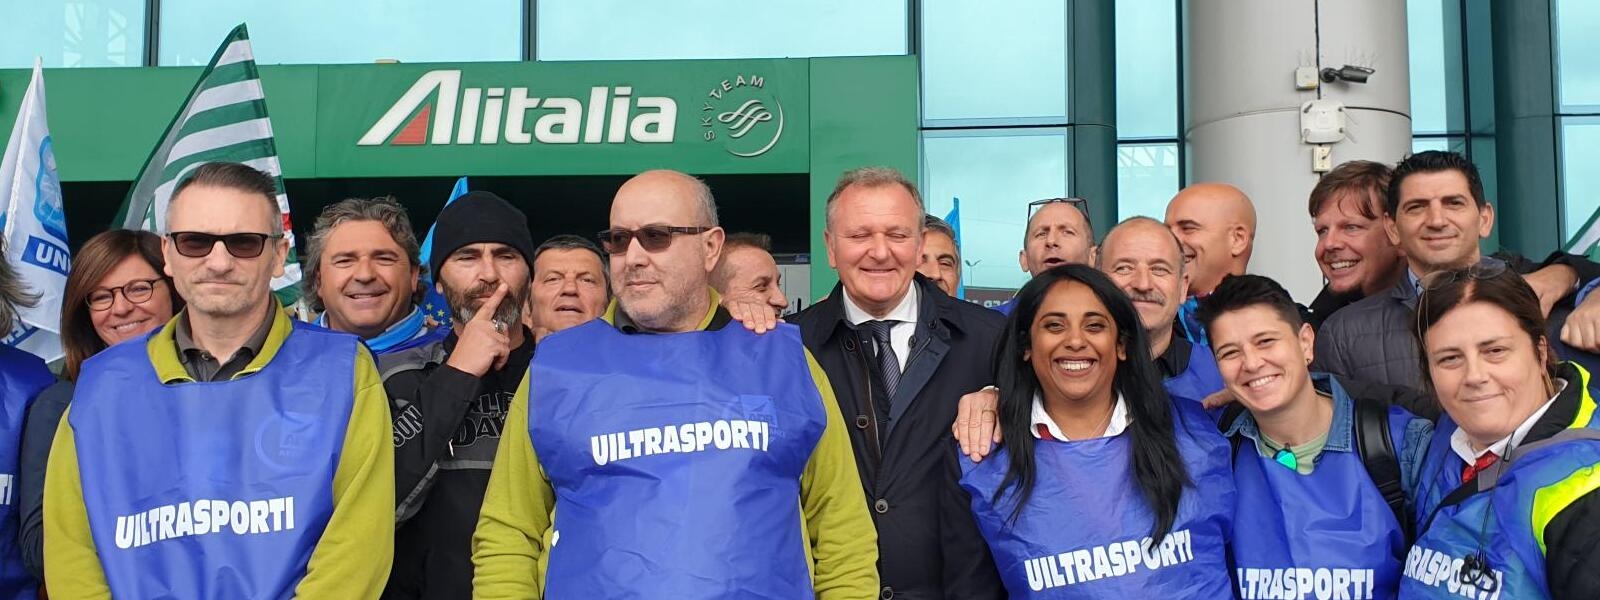 Nuova Alitalia, Uiltrasporti: sia vero rilancio e non soluzione tampone di corto respiro